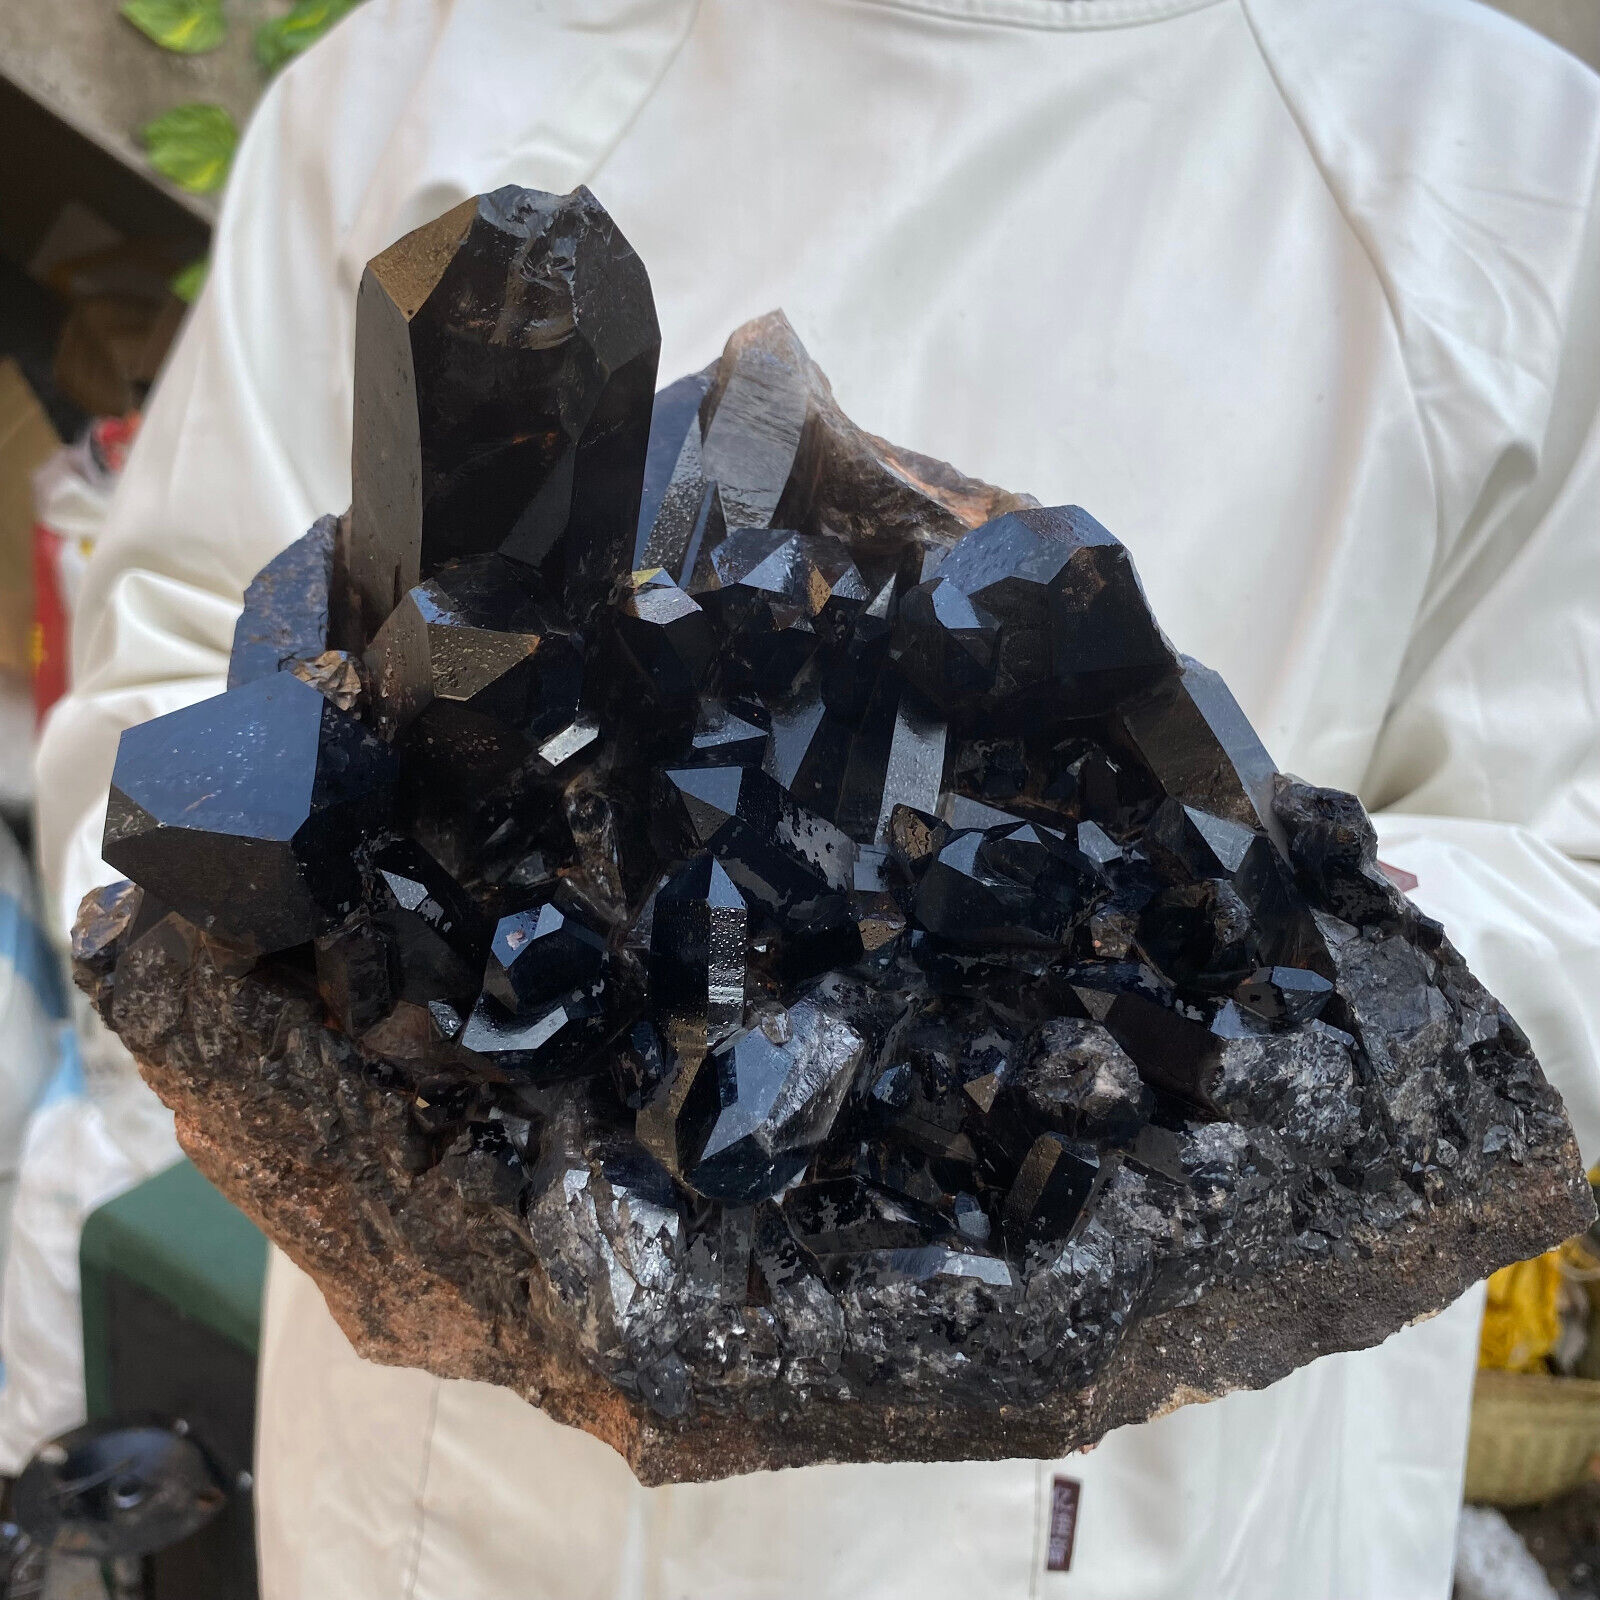 9lb Large Natural Smoky Black Quartz Crystal Cluster Raw Mineral Specimen